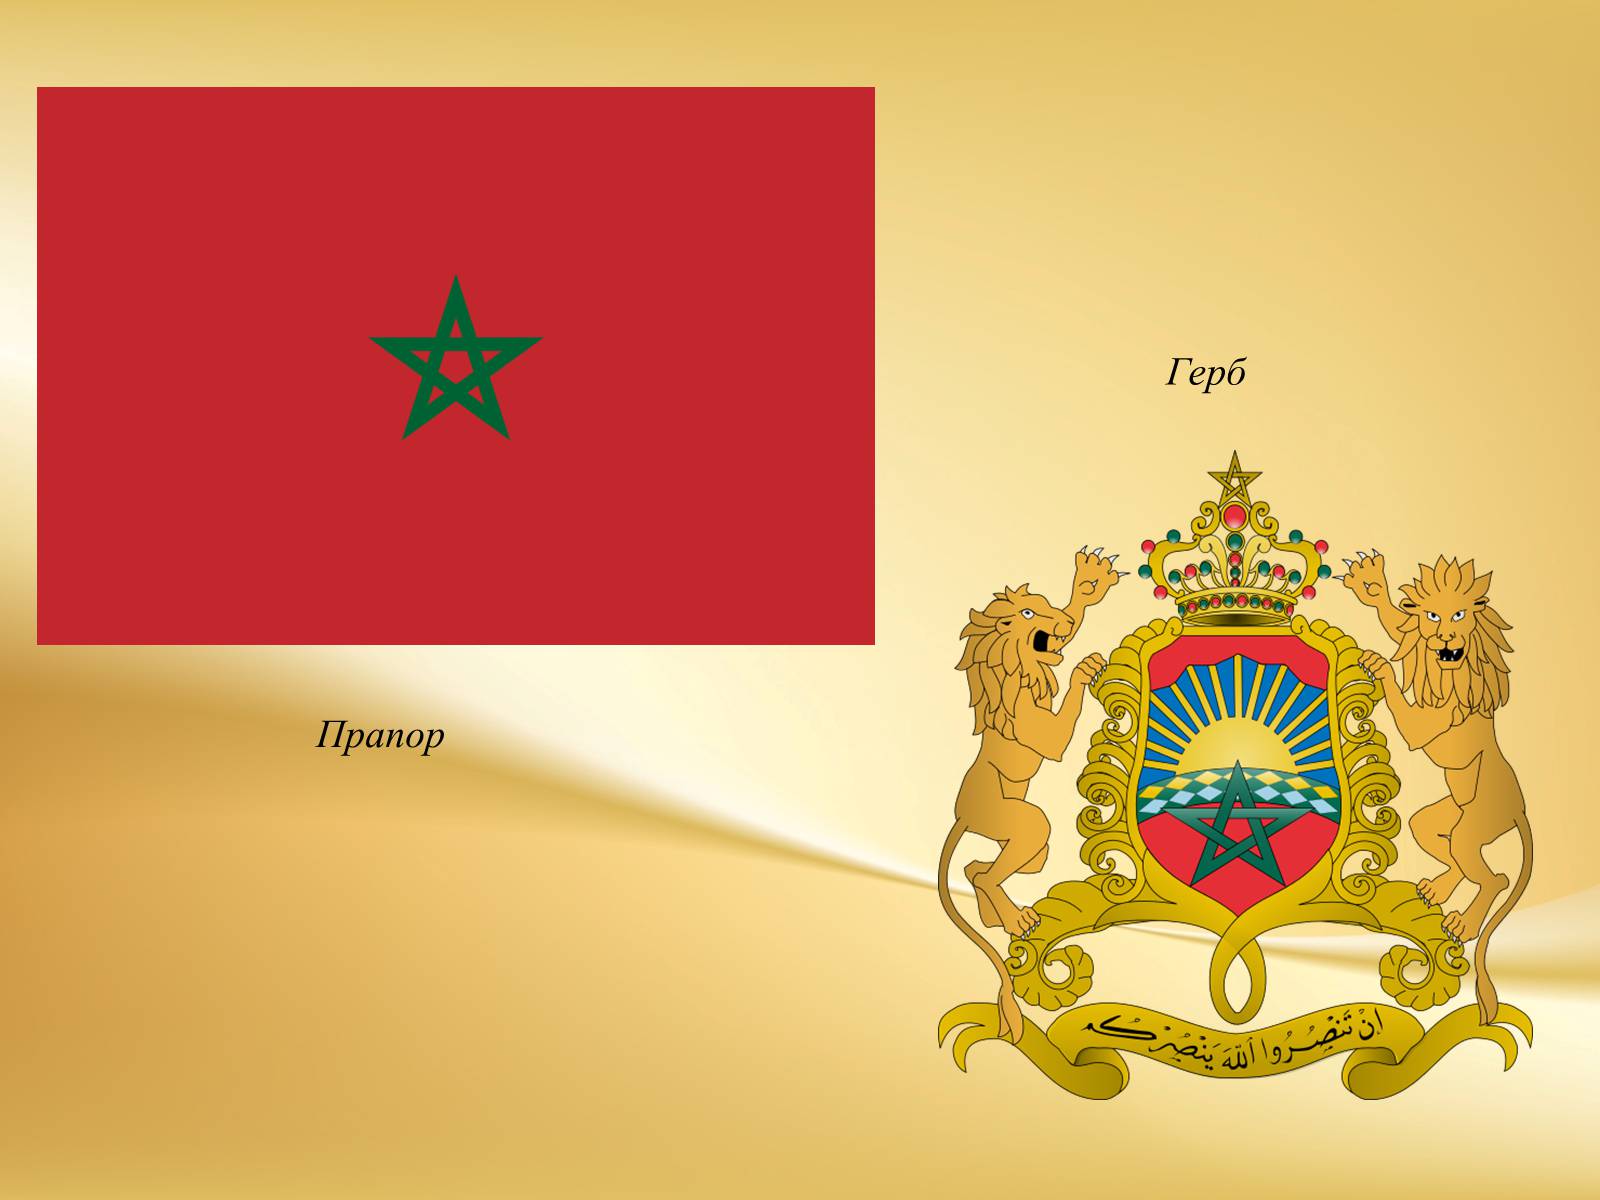 Марокко форма правления. Герб Марокко. Марокко флаг и герб. Марокко герб Марокко.